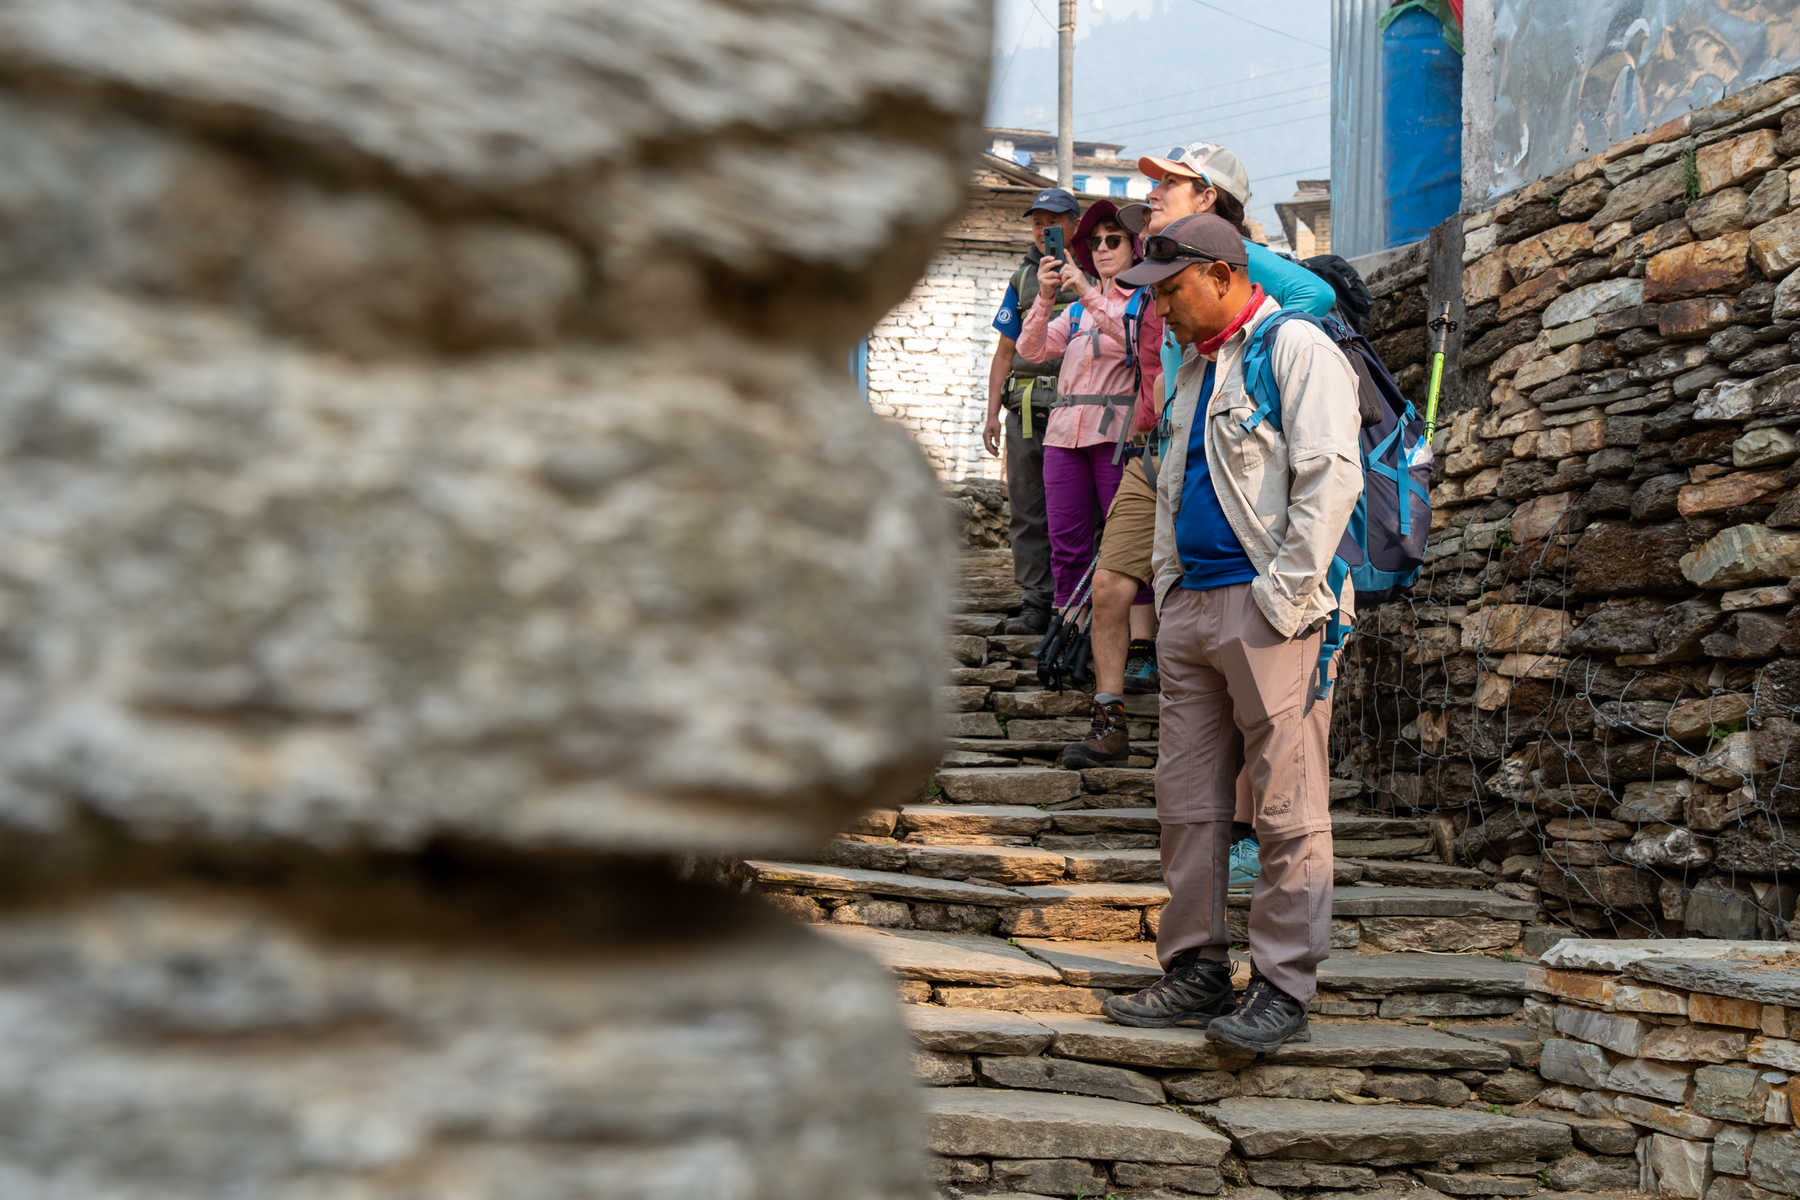 Randonneurs qui visitent un village typique au Népal